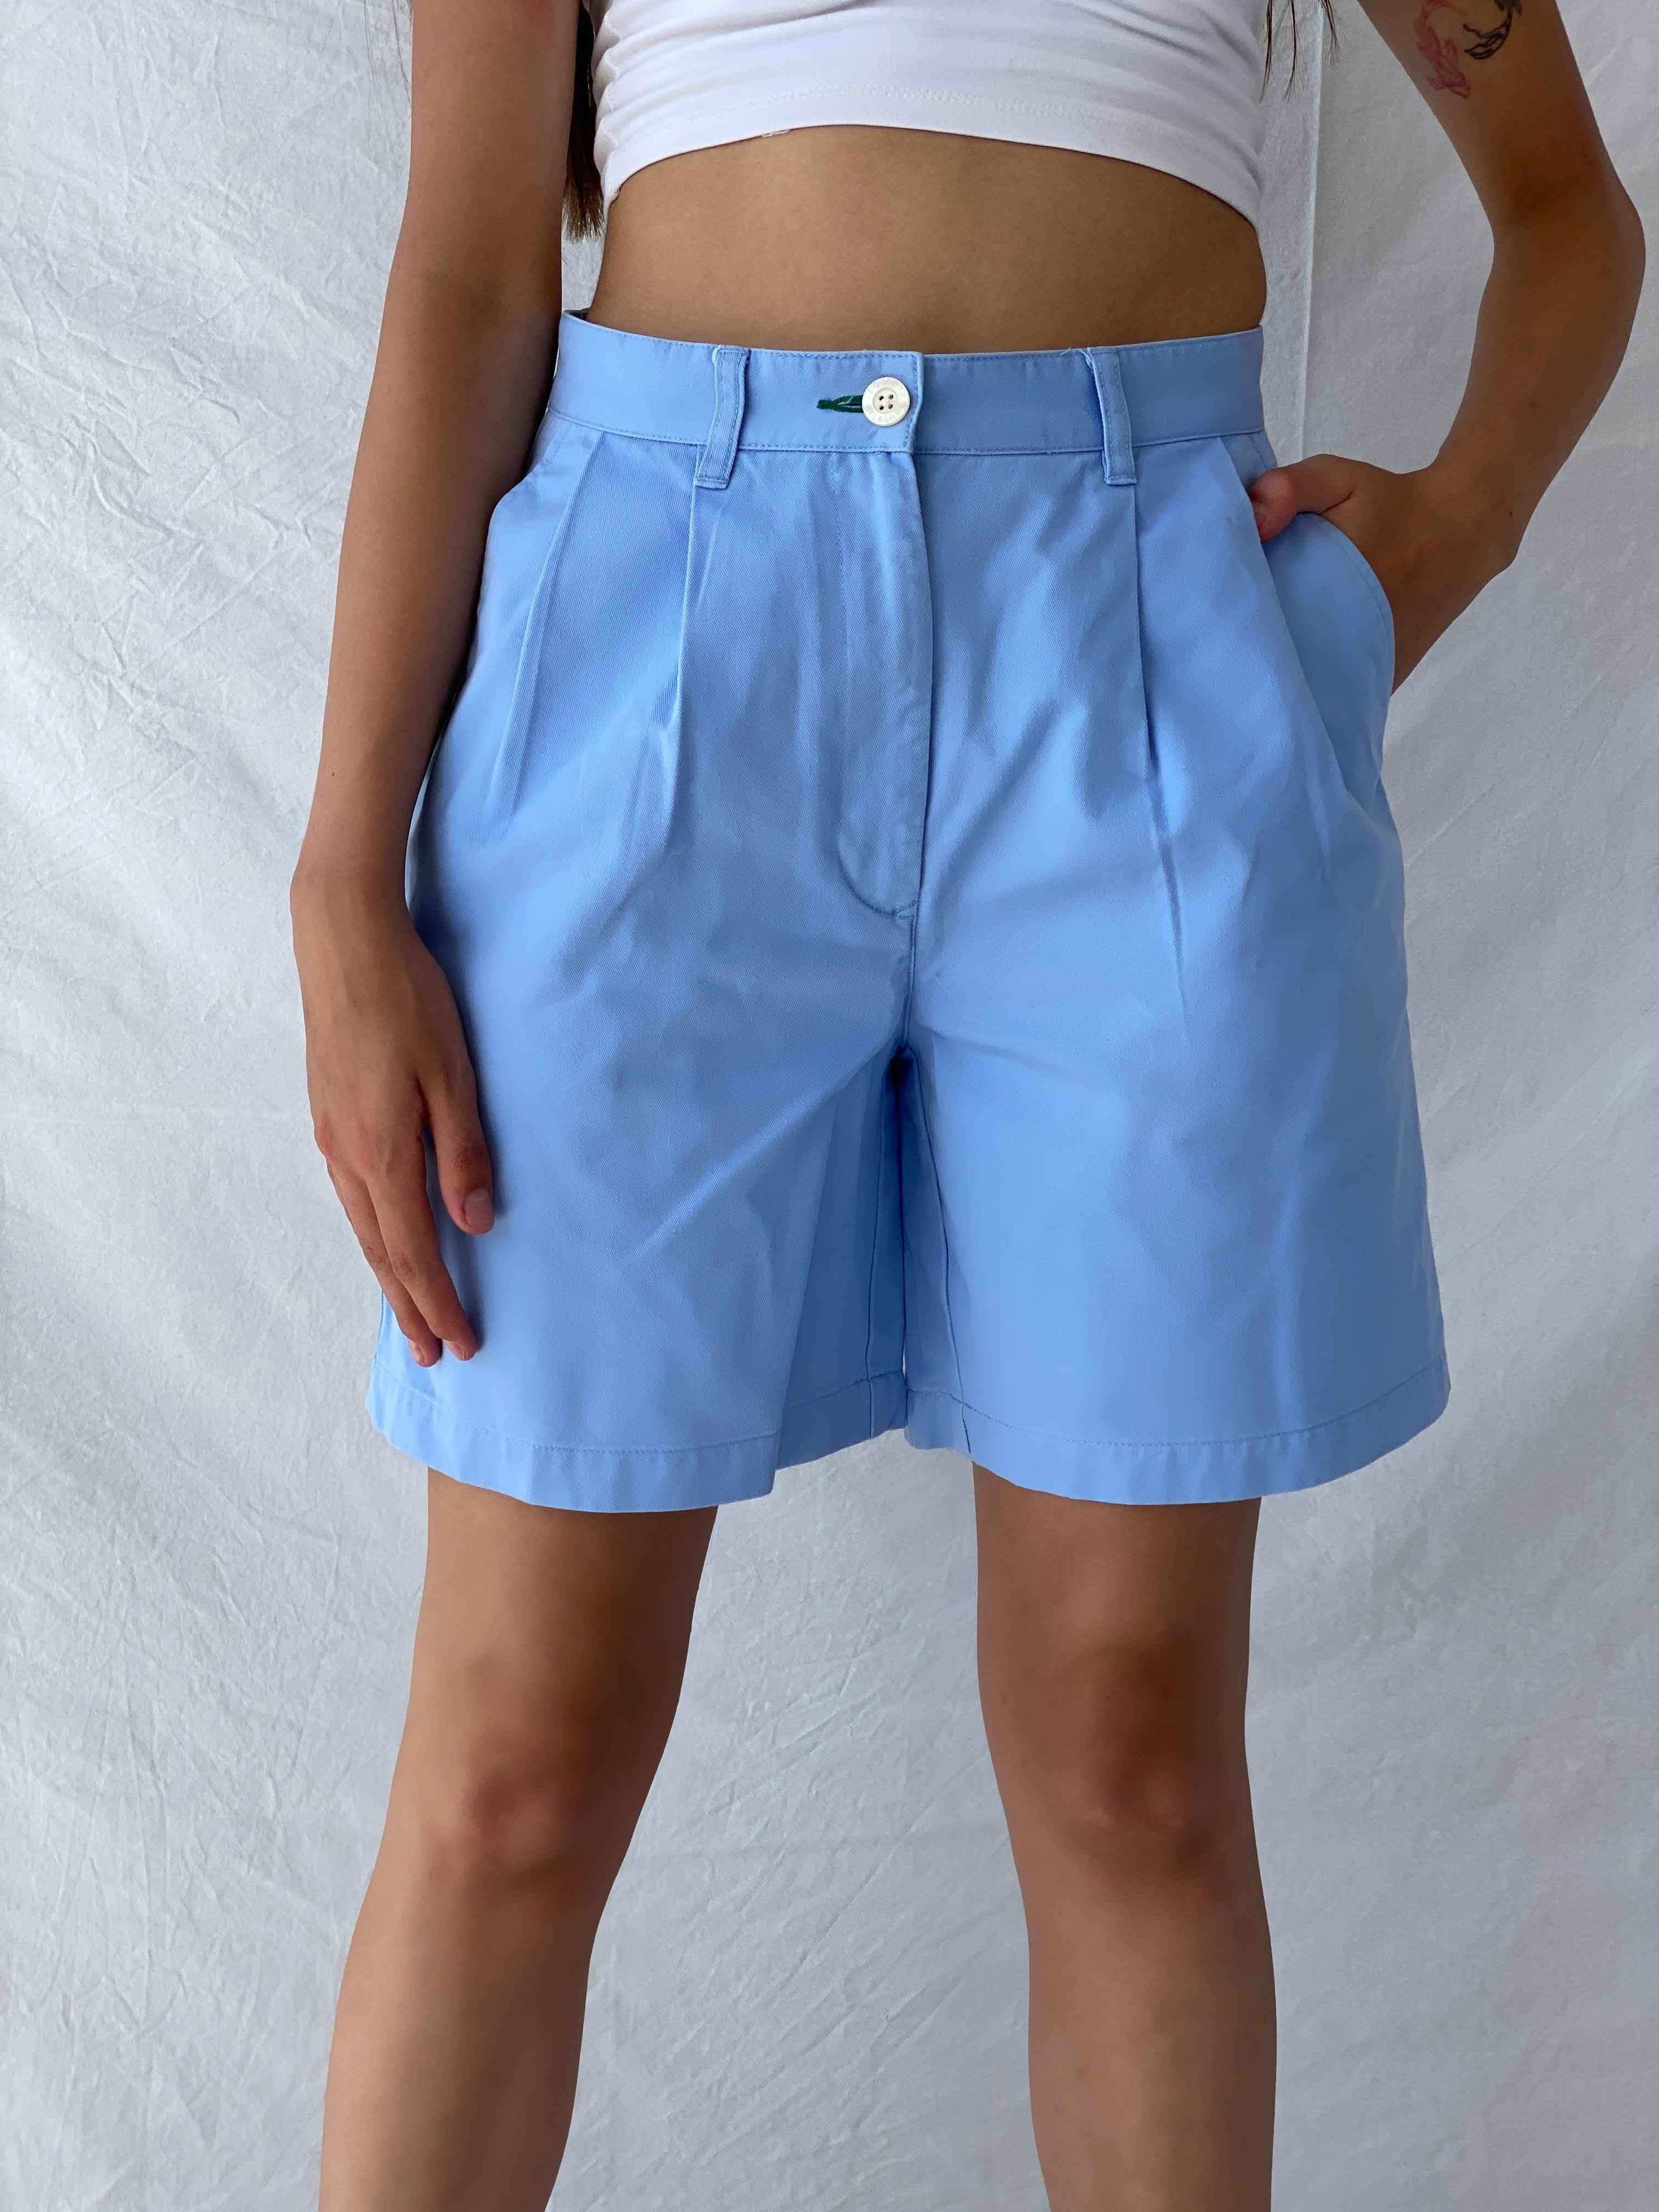 Tommy Hilfiger Shorts - Balagan Vintage Shorts 00s, 90s, Mira